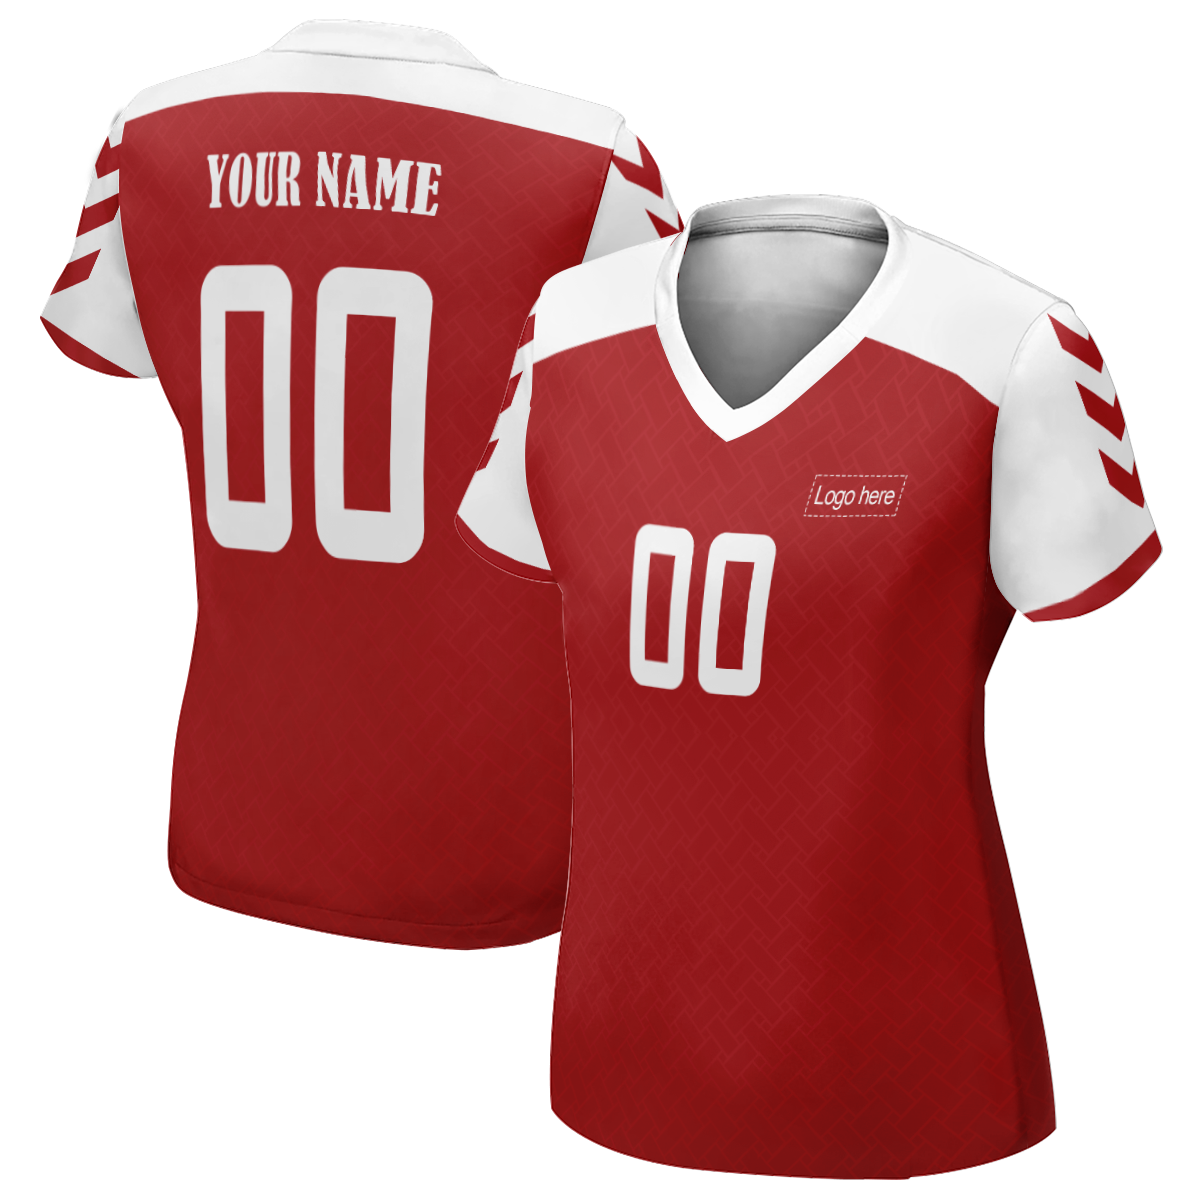 그림이 있는 여성 한정판 덴마크 월드컵 맞춤형 축구 유니폼